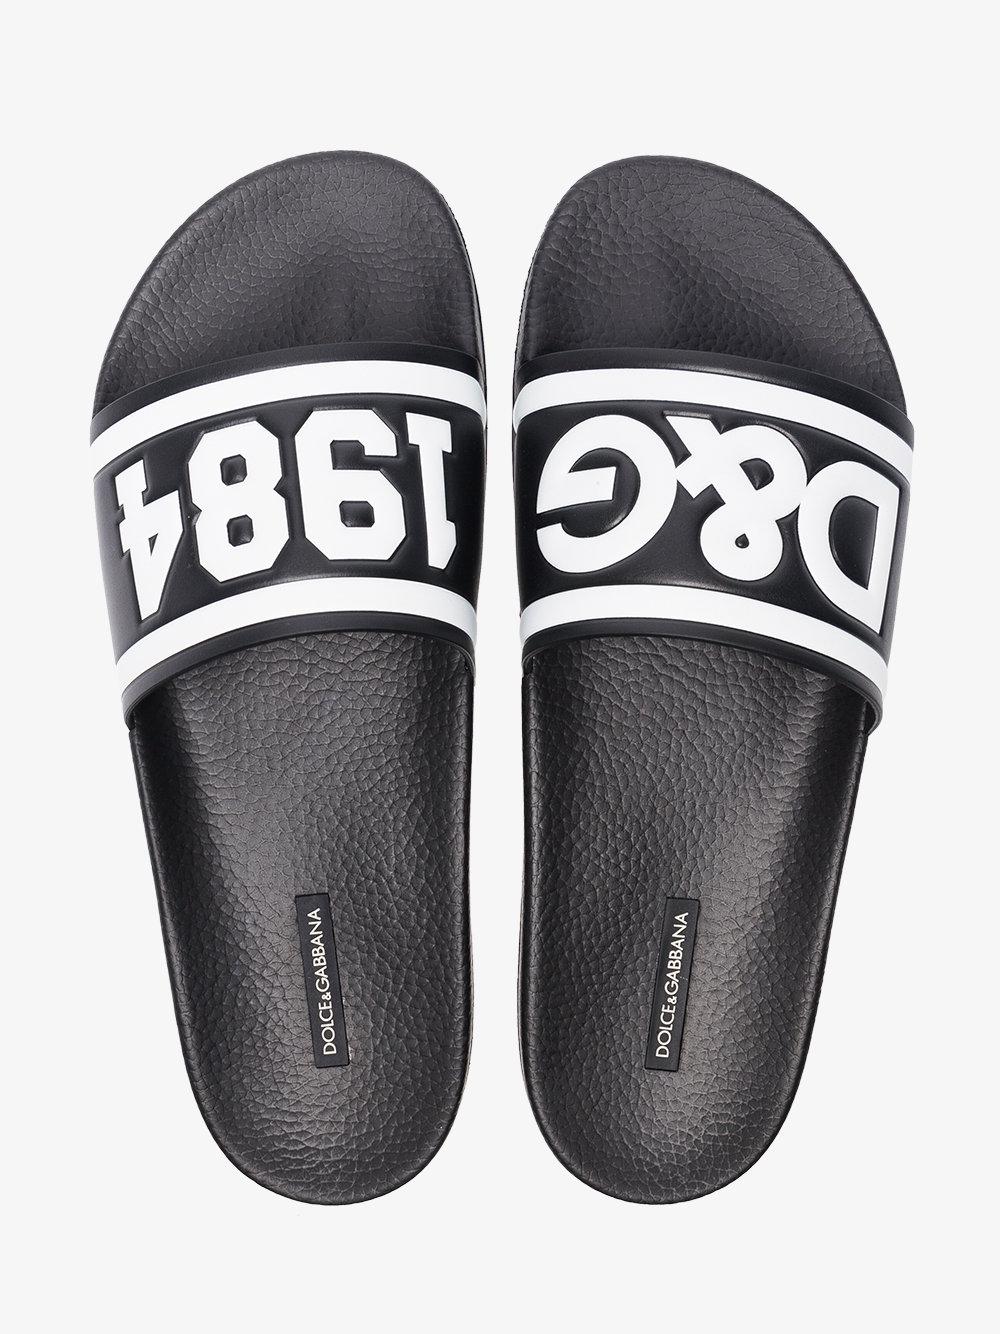 Dolce & Gabbana Leather Logo Slides in Black for Men - Save 69% | Lyst